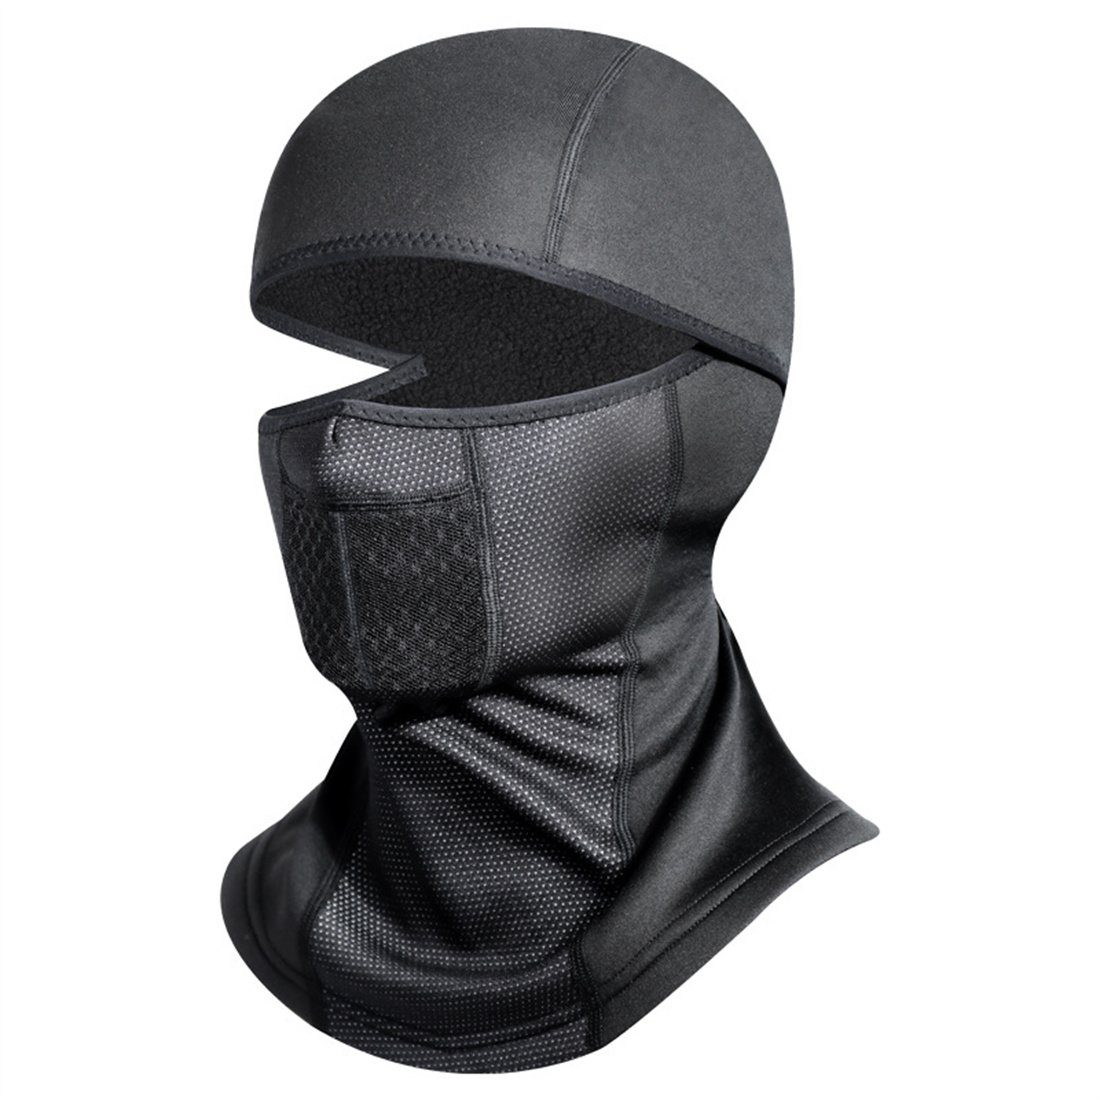 DÖRÖY Sturmhaube Warme Radfahrer, Winter-Skimaske, unisex für Gesichtsschutzmaske